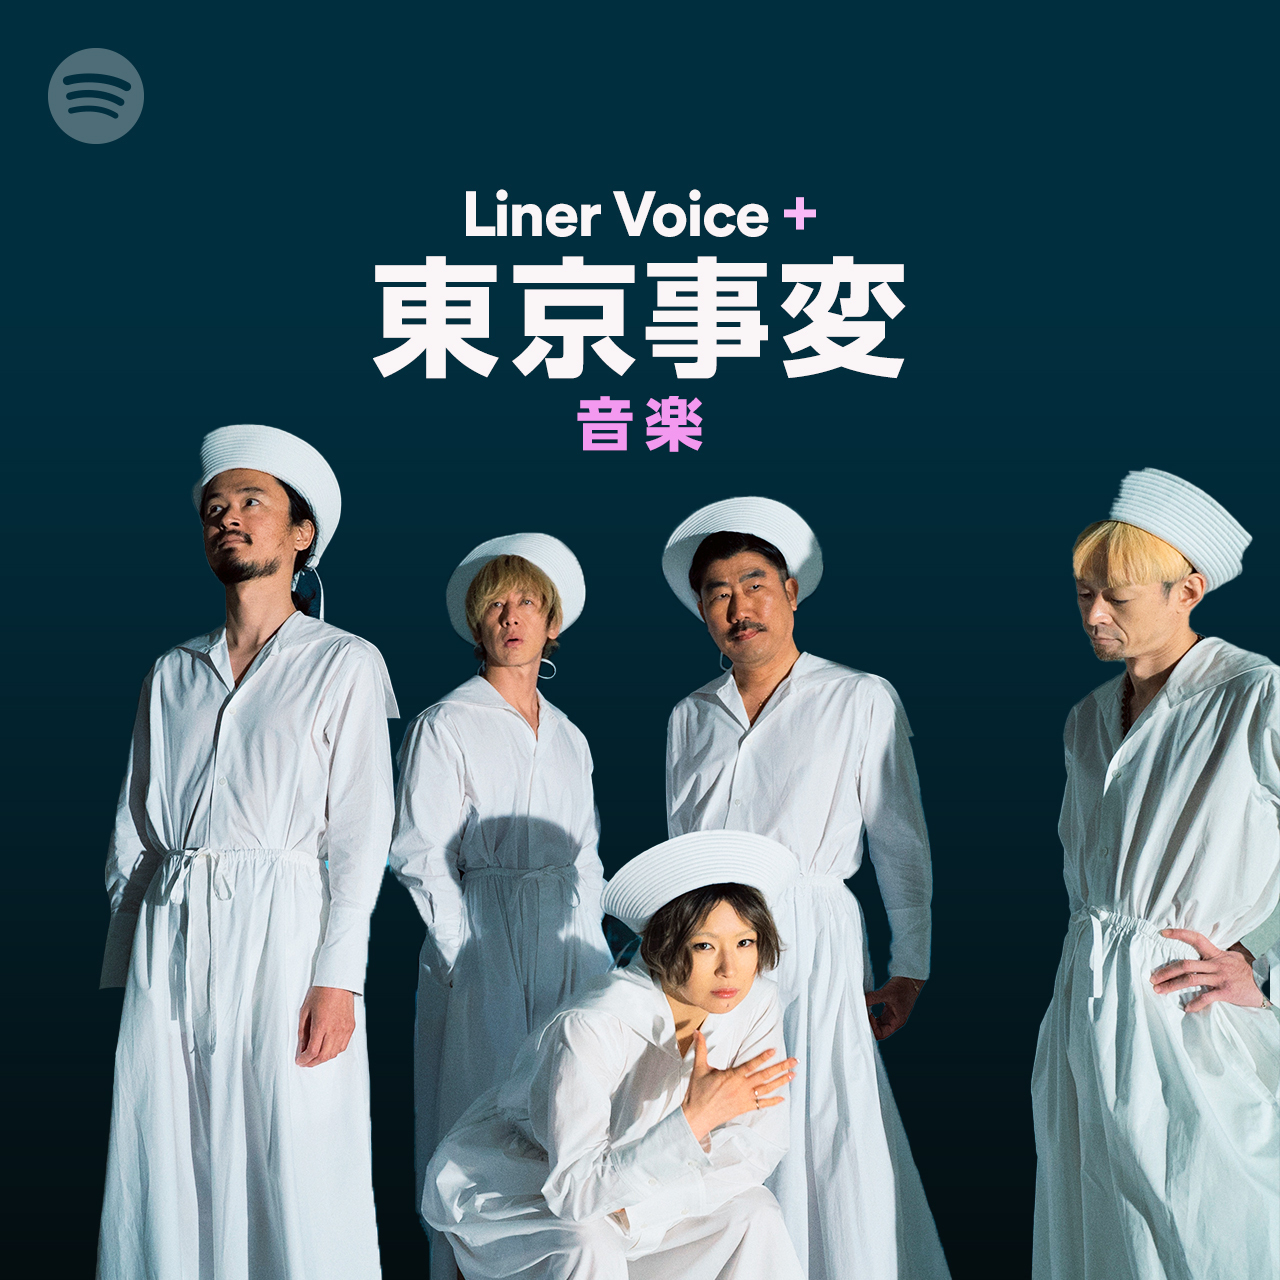 東京事変ニューアルバム『音楽』の楽曲とインタビューが一緒に楽しめる Spotifyオリジナルプレイリスト「Liner Voice＋」を公開